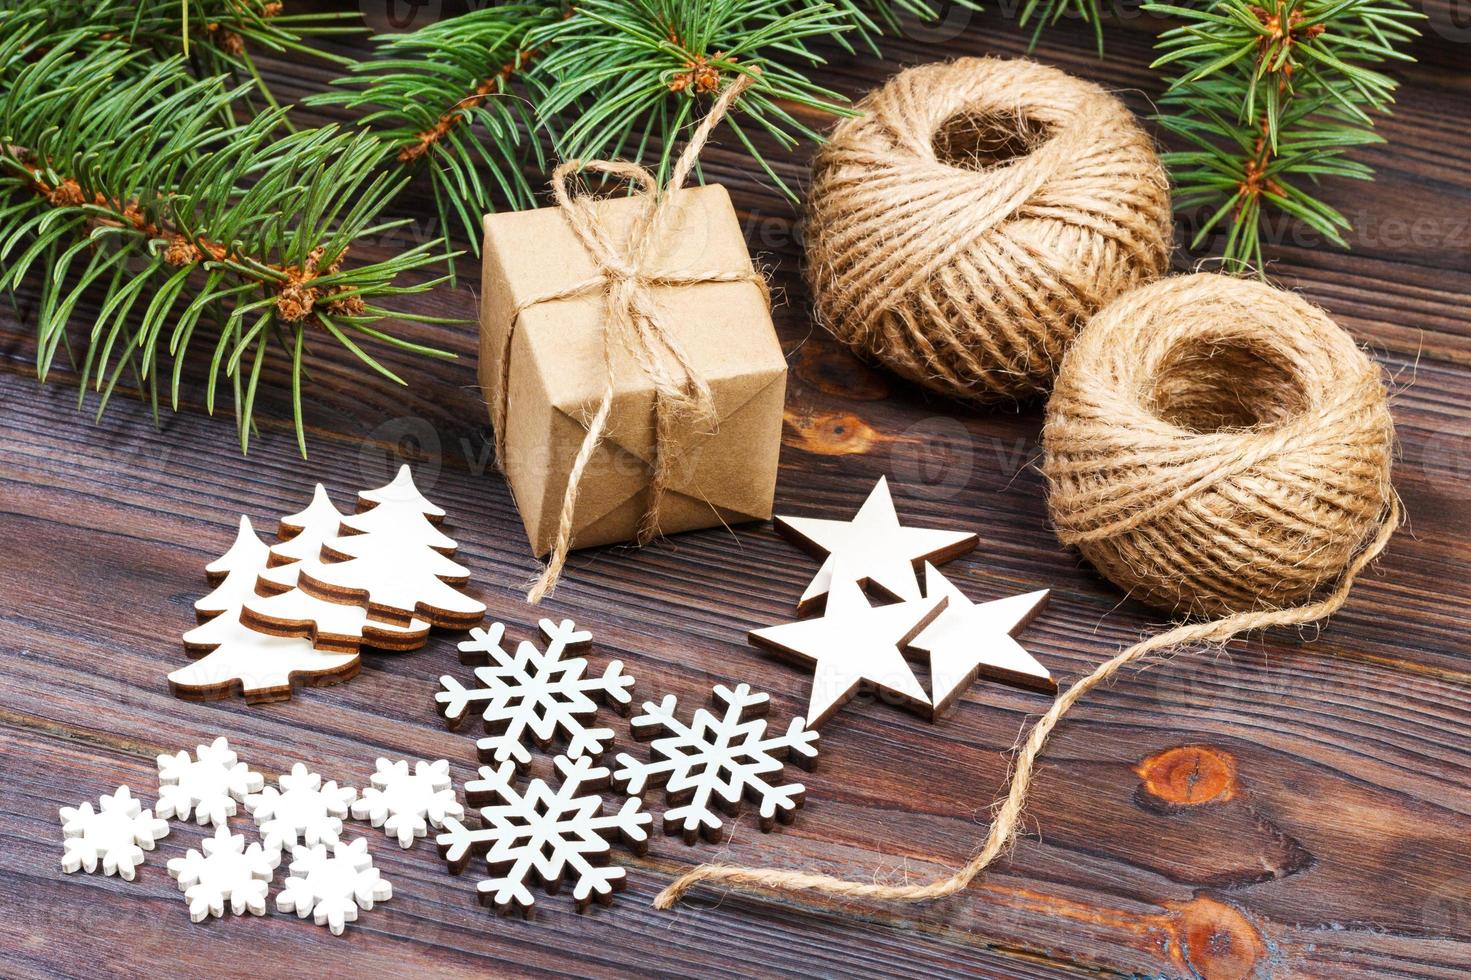 Kerstmis decoratie, geschenk doos in ambacht papier met touw touw, concept achtergrond, top visie Aan hout tafel oppervlak. Kerstmis ornamenten en presenteert grens met sneeuwvlokken en sterren foto